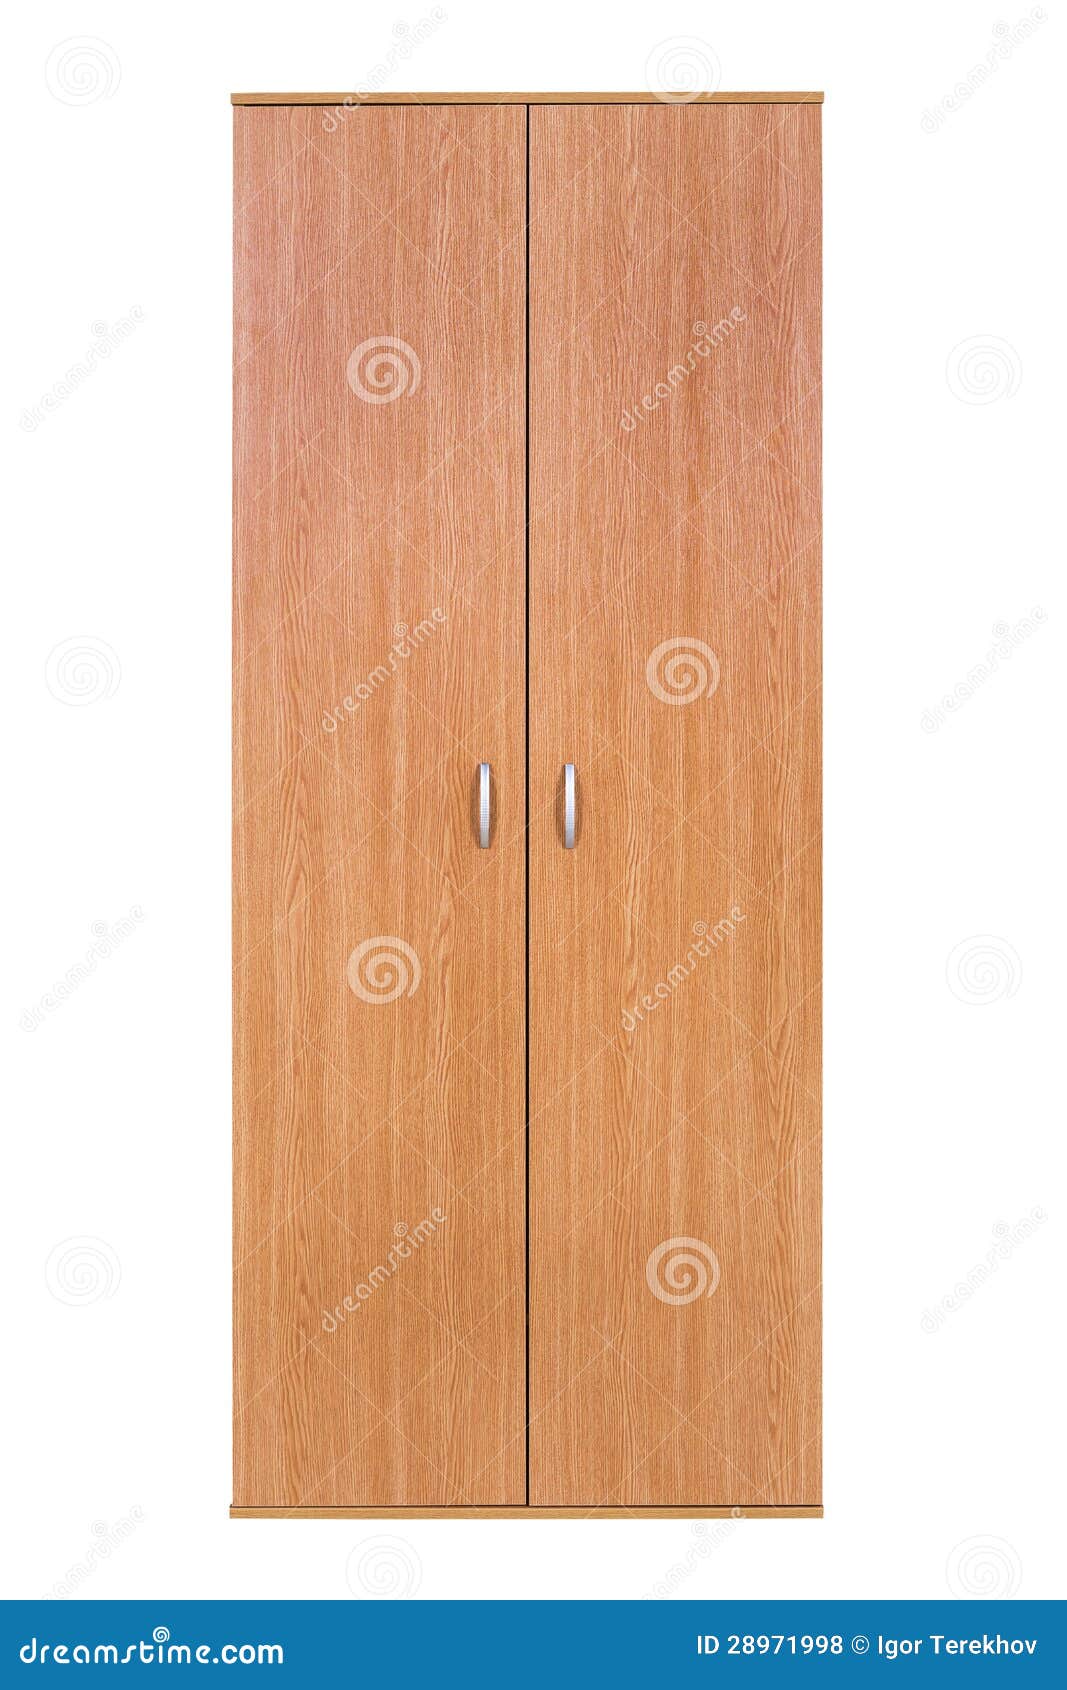 modern wooden wardrobe